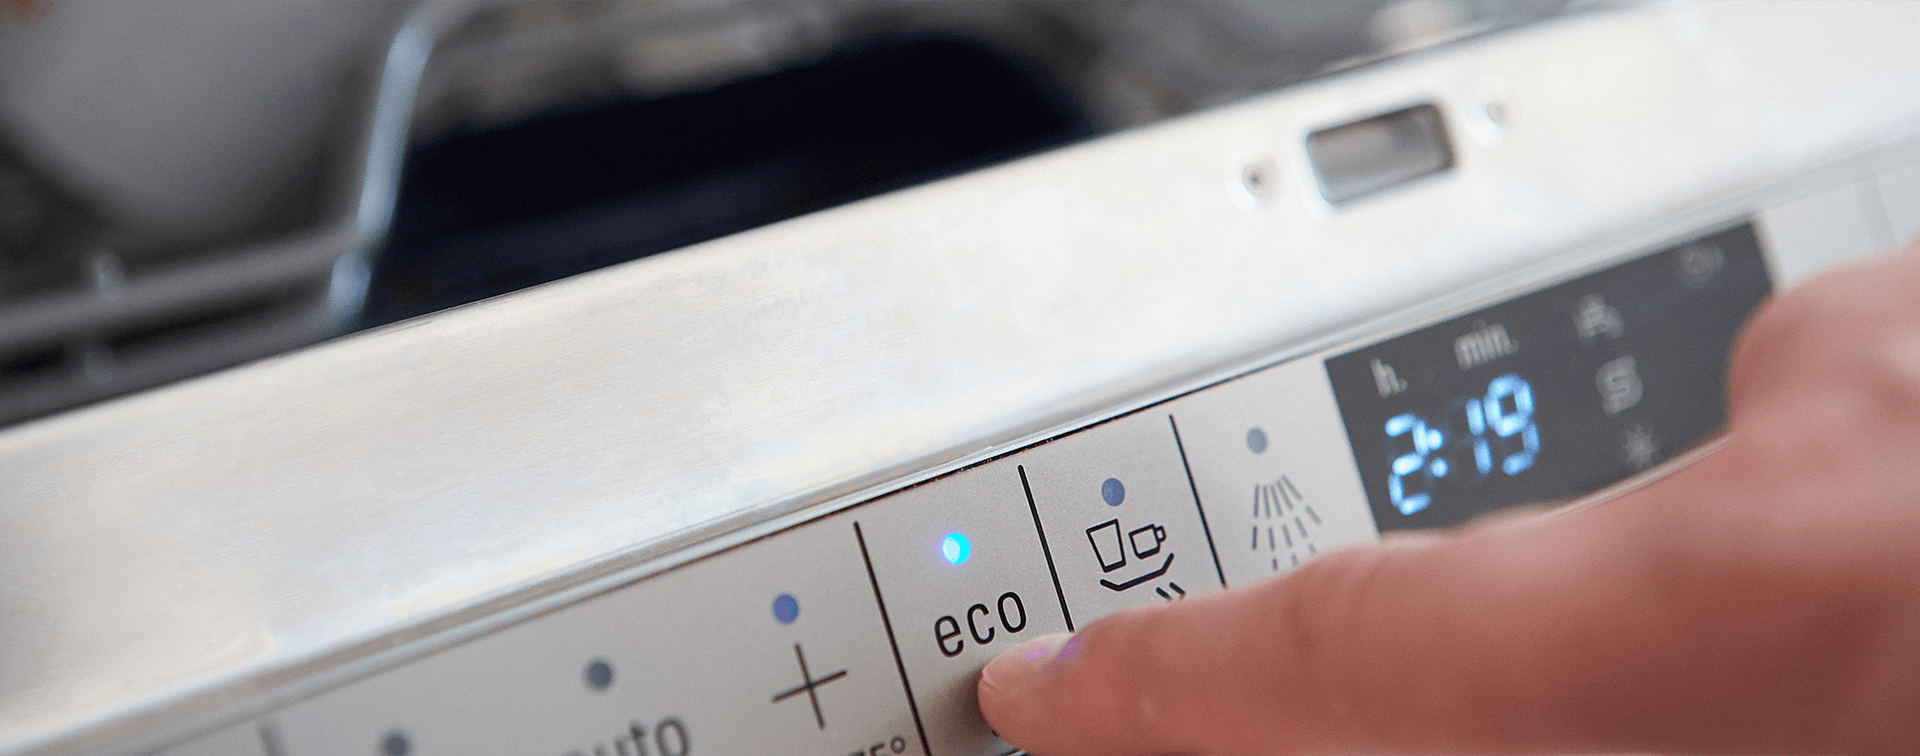 Какой режим посудомойки. Сколько электричества потребляет посудомойка Beko ds25. Программа эко в посудомоечной машине.